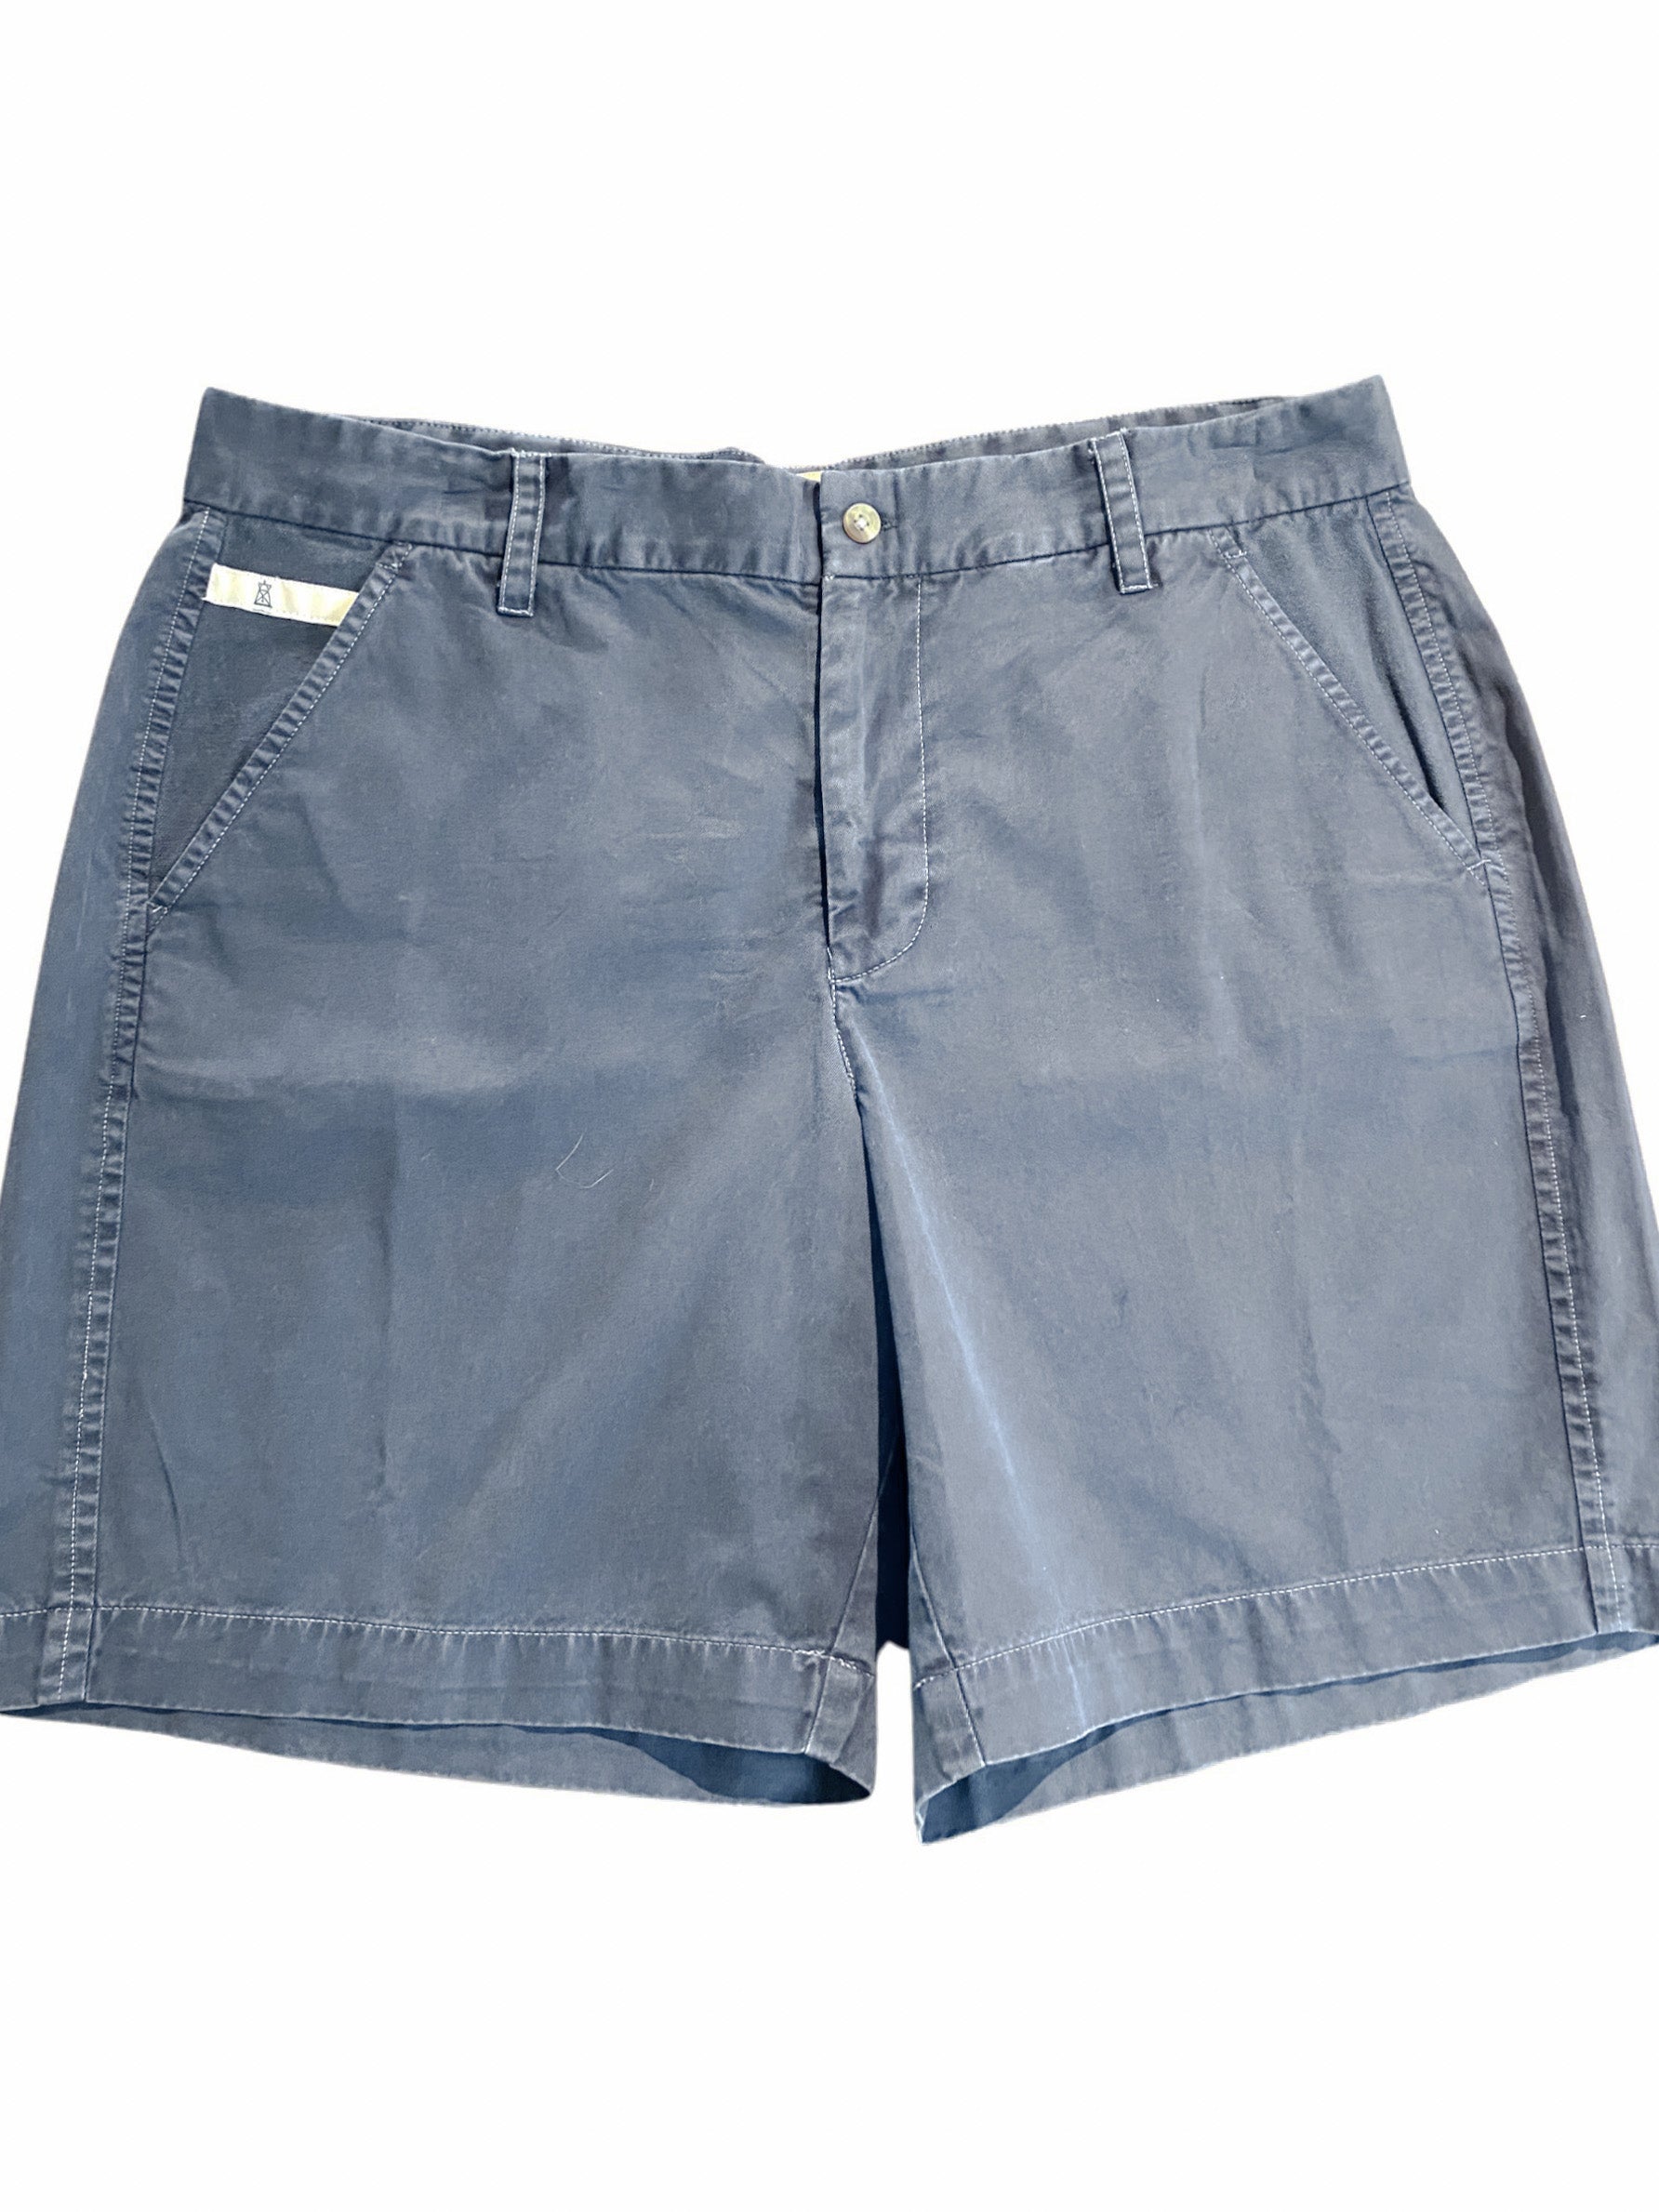 Women's Sailor Shorts - Summer Blue- NEW